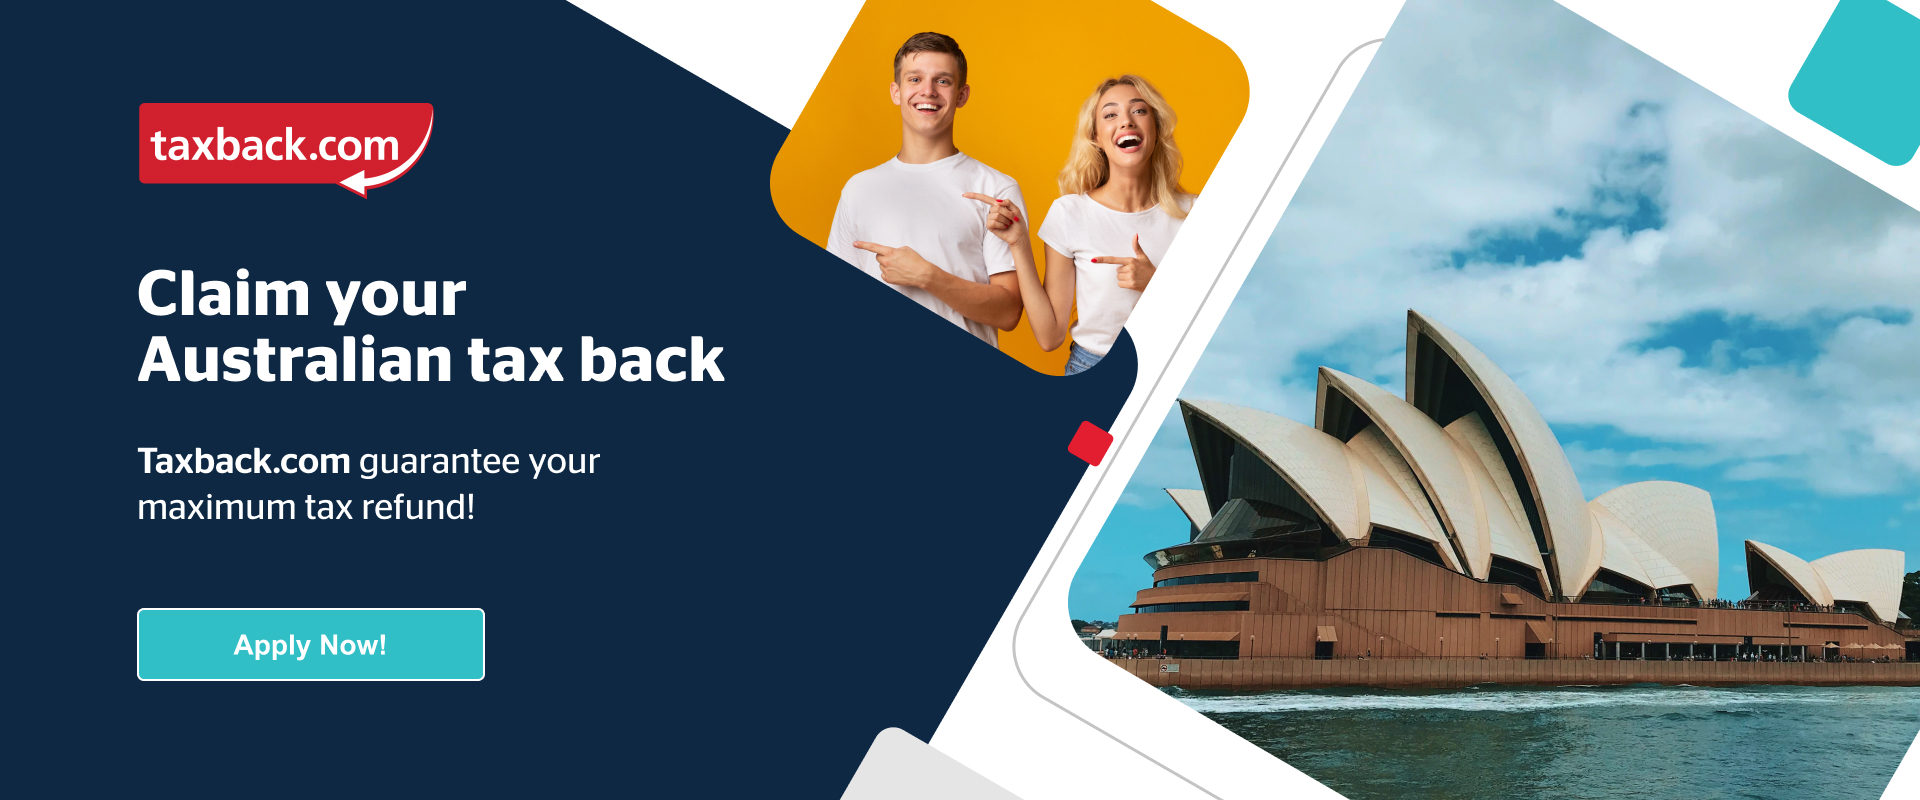 Australia Tourist Tax Refund Brisbane